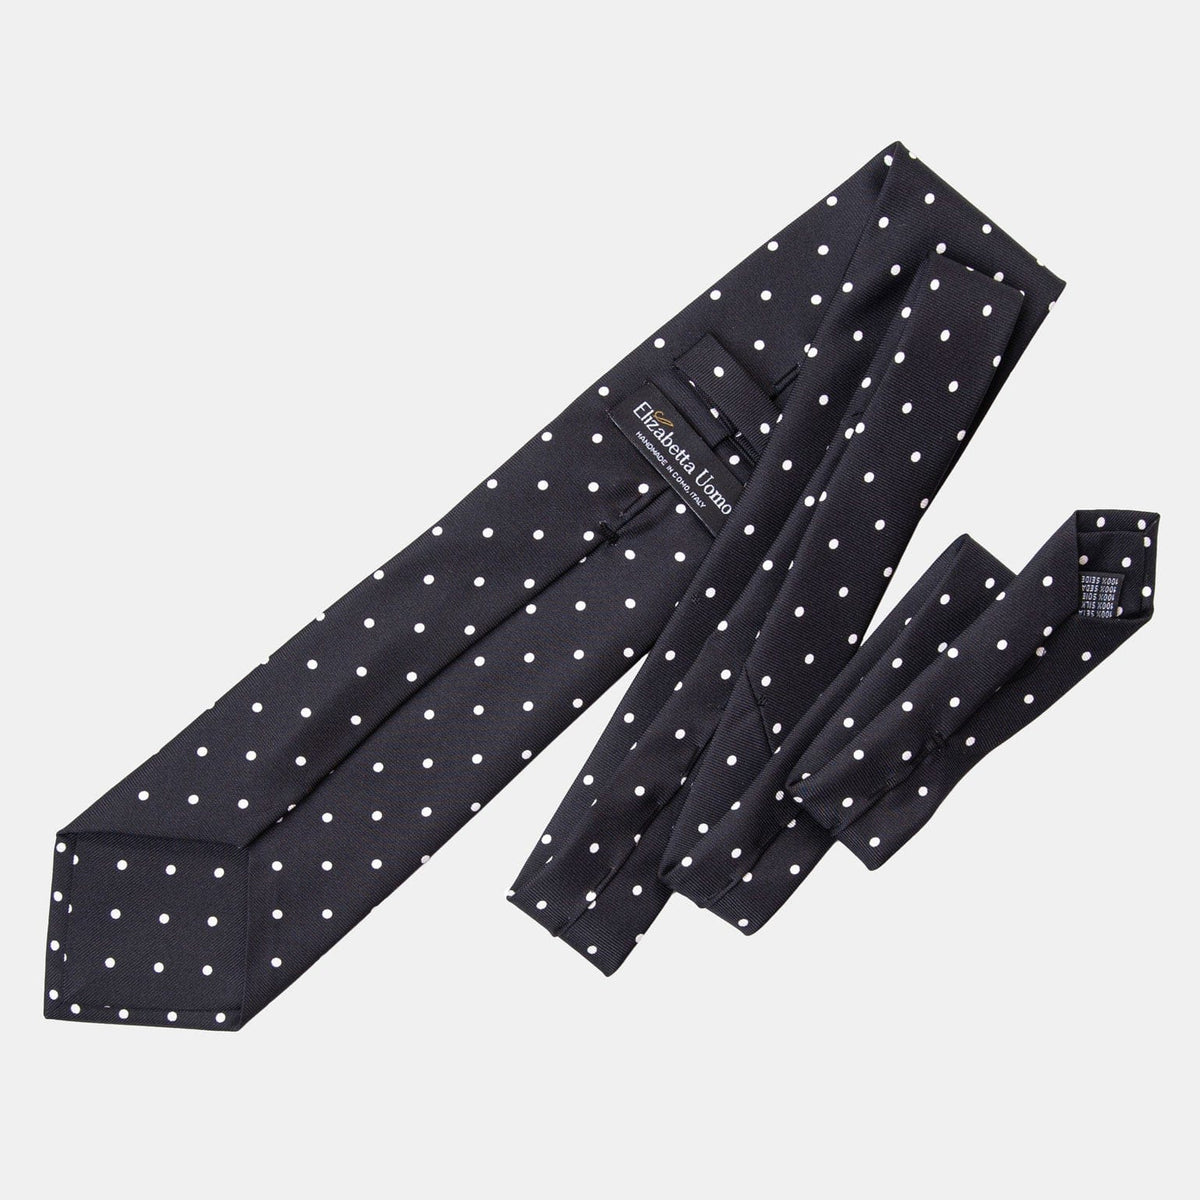 Extra Long Black Polka Dot Silk Tie - Made in Como Italy